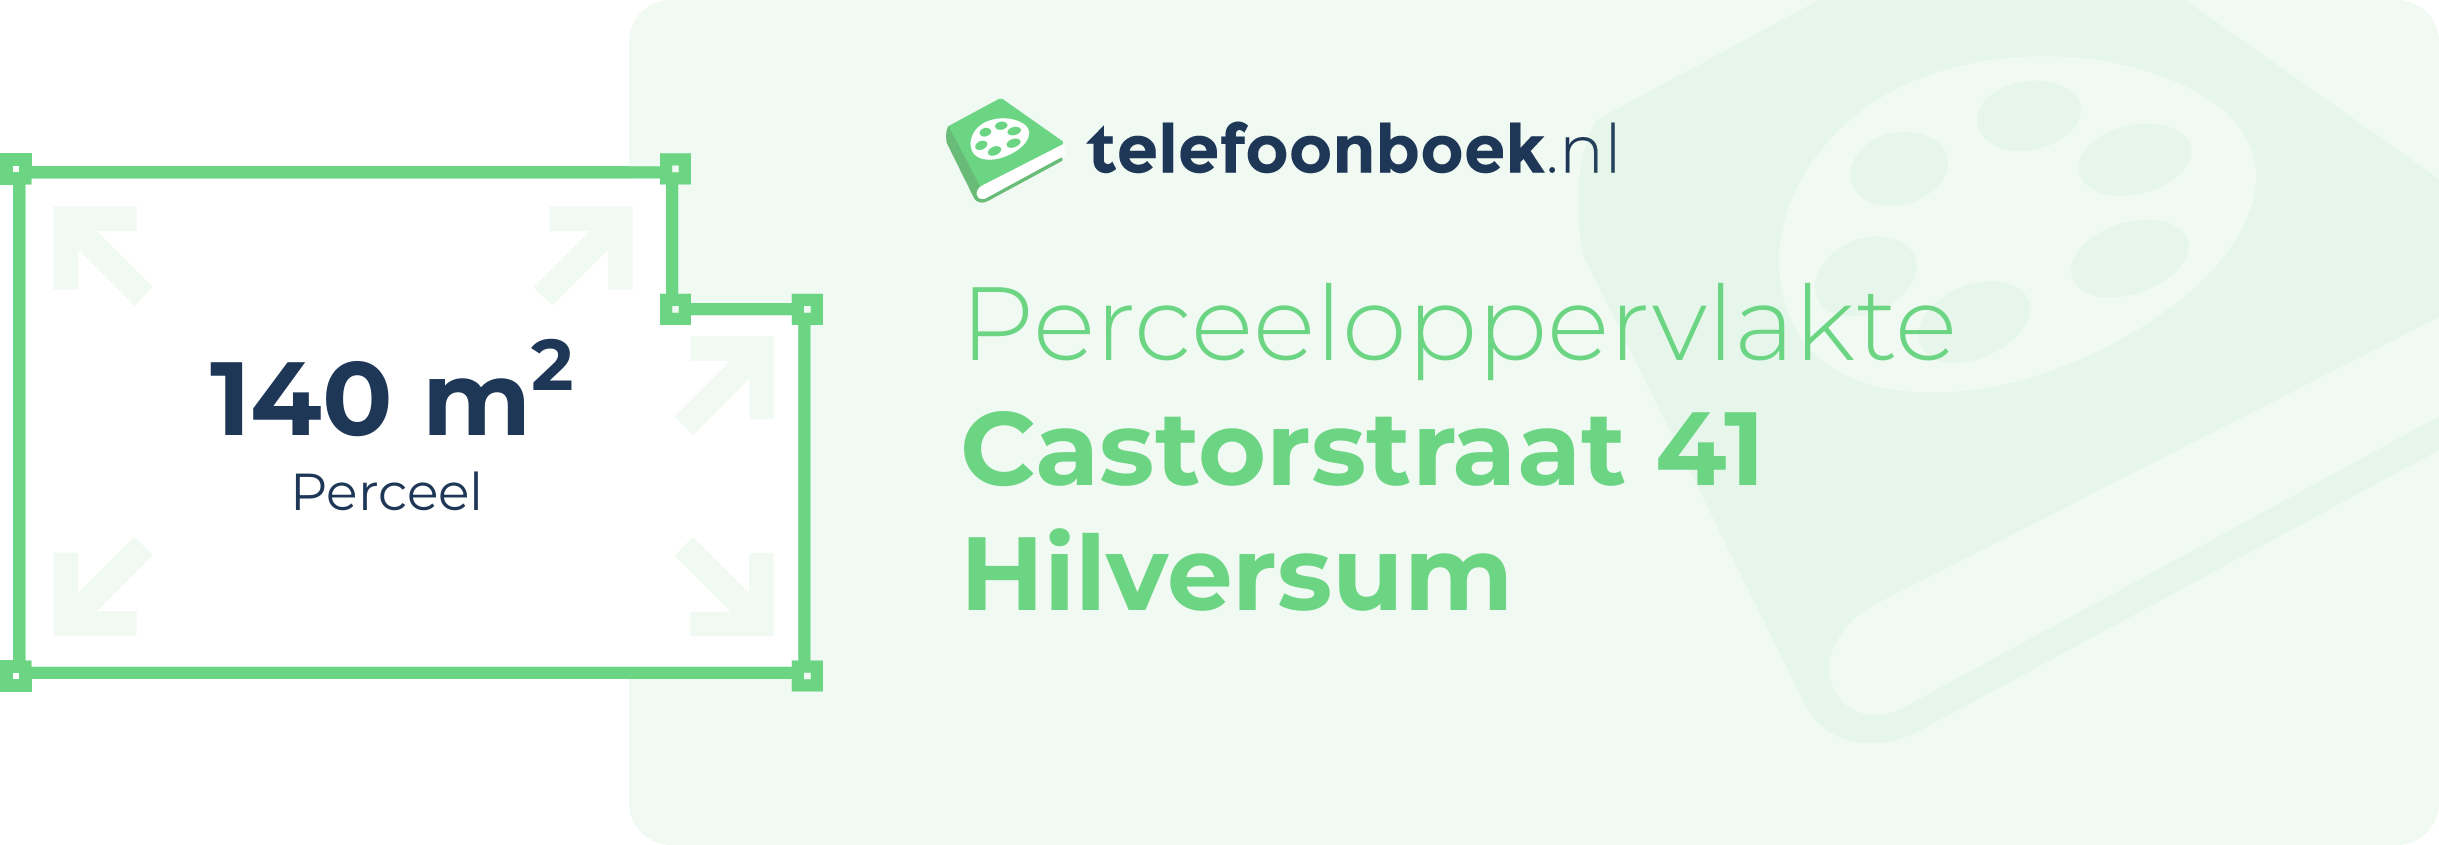 Perceeloppervlakte Castorstraat 41 Hilversum